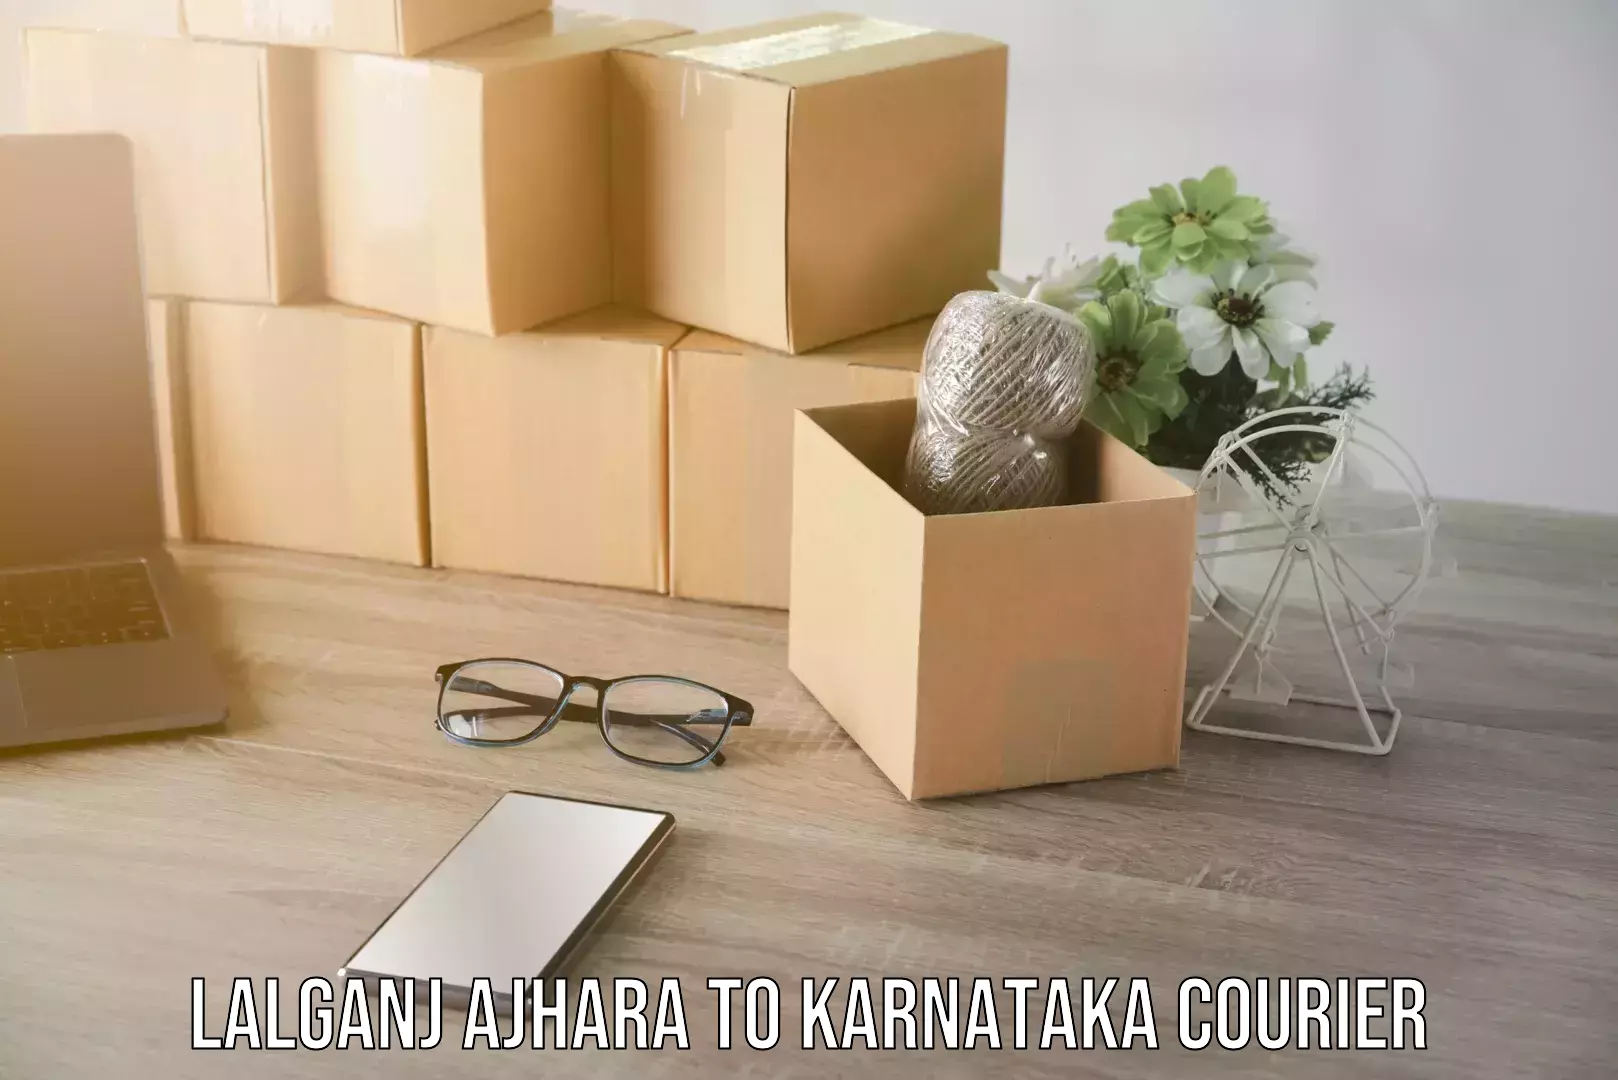 Customized relocation services Lalganj Ajhara to Karnataka